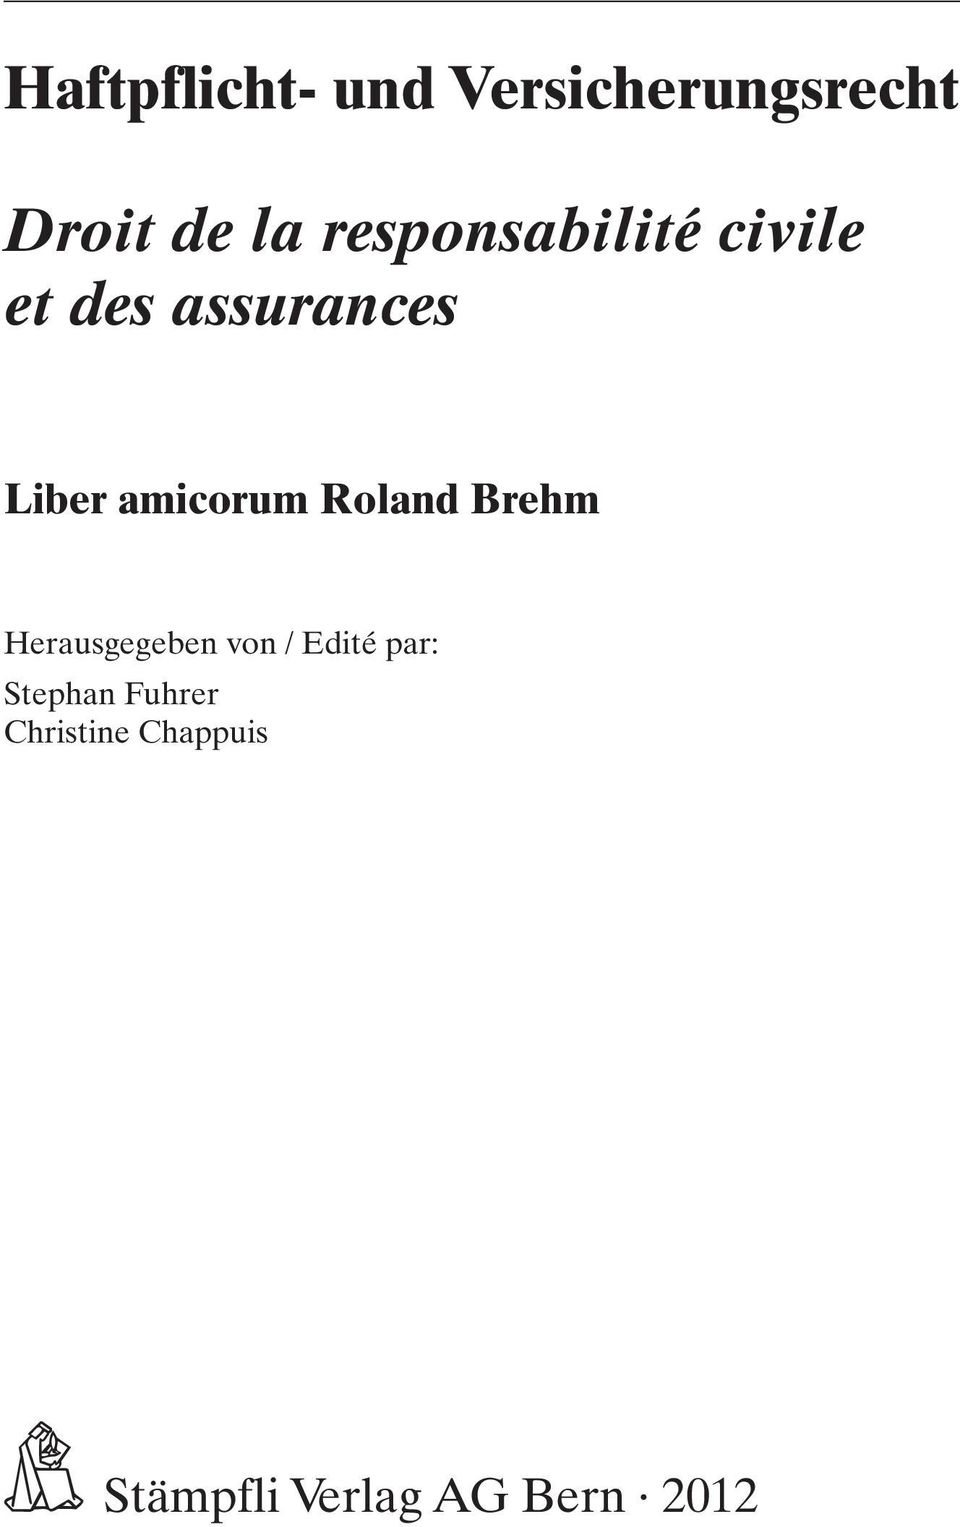 amicorum Roland Brehm Herausgegeben von / Edité par: